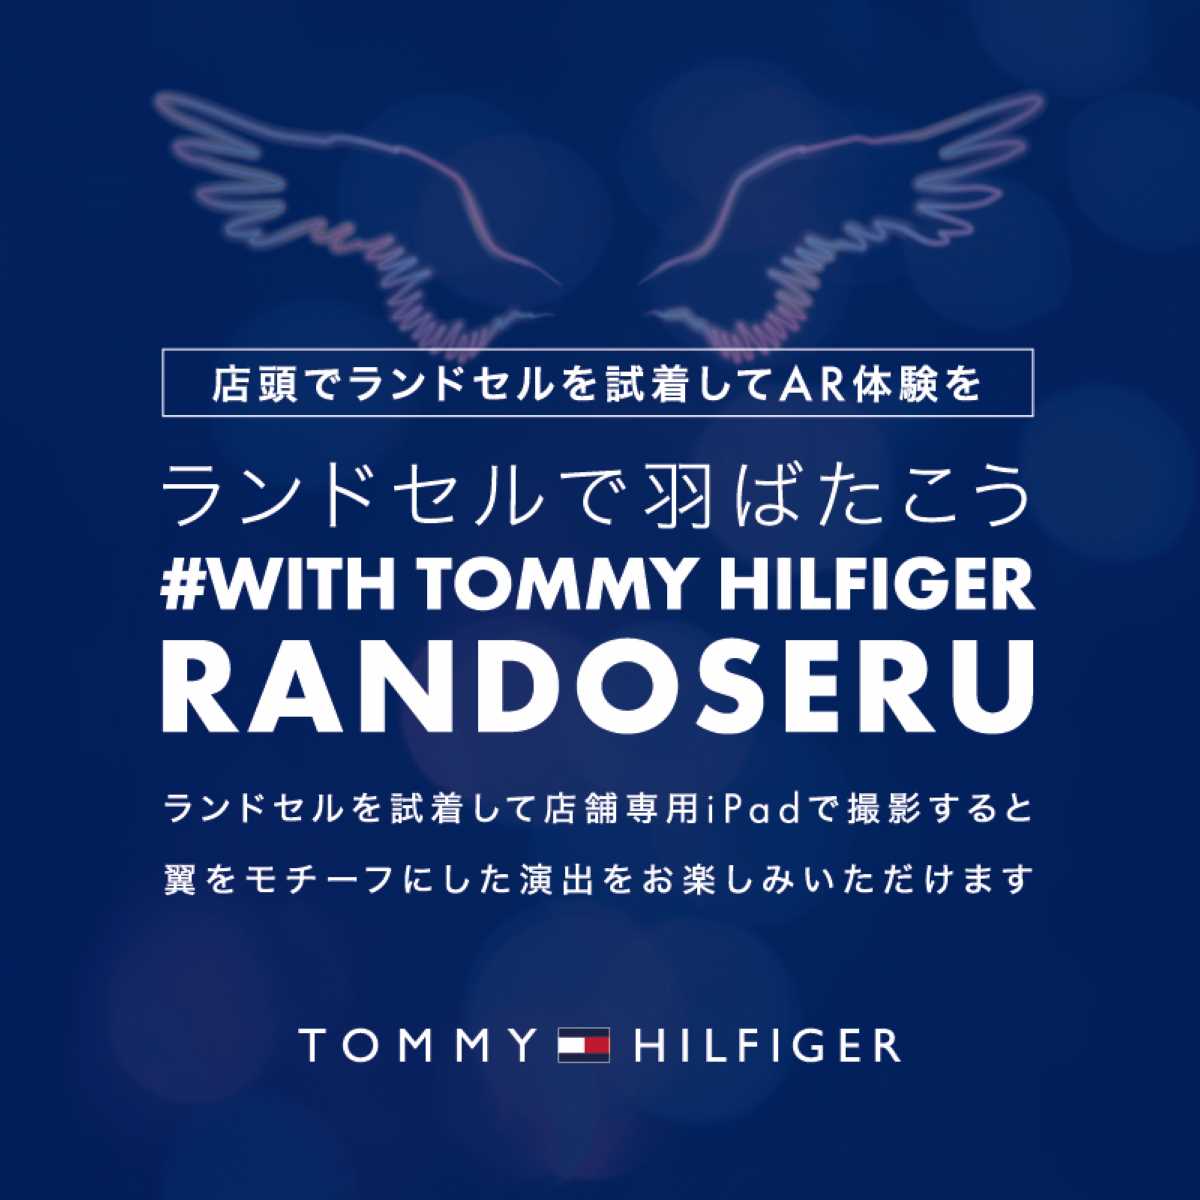 トミー ヒルフィガーのランドセルをARで試着できるイベント「#WITH TOMMY HILFIGER RANDOSERU」メインビジュアル